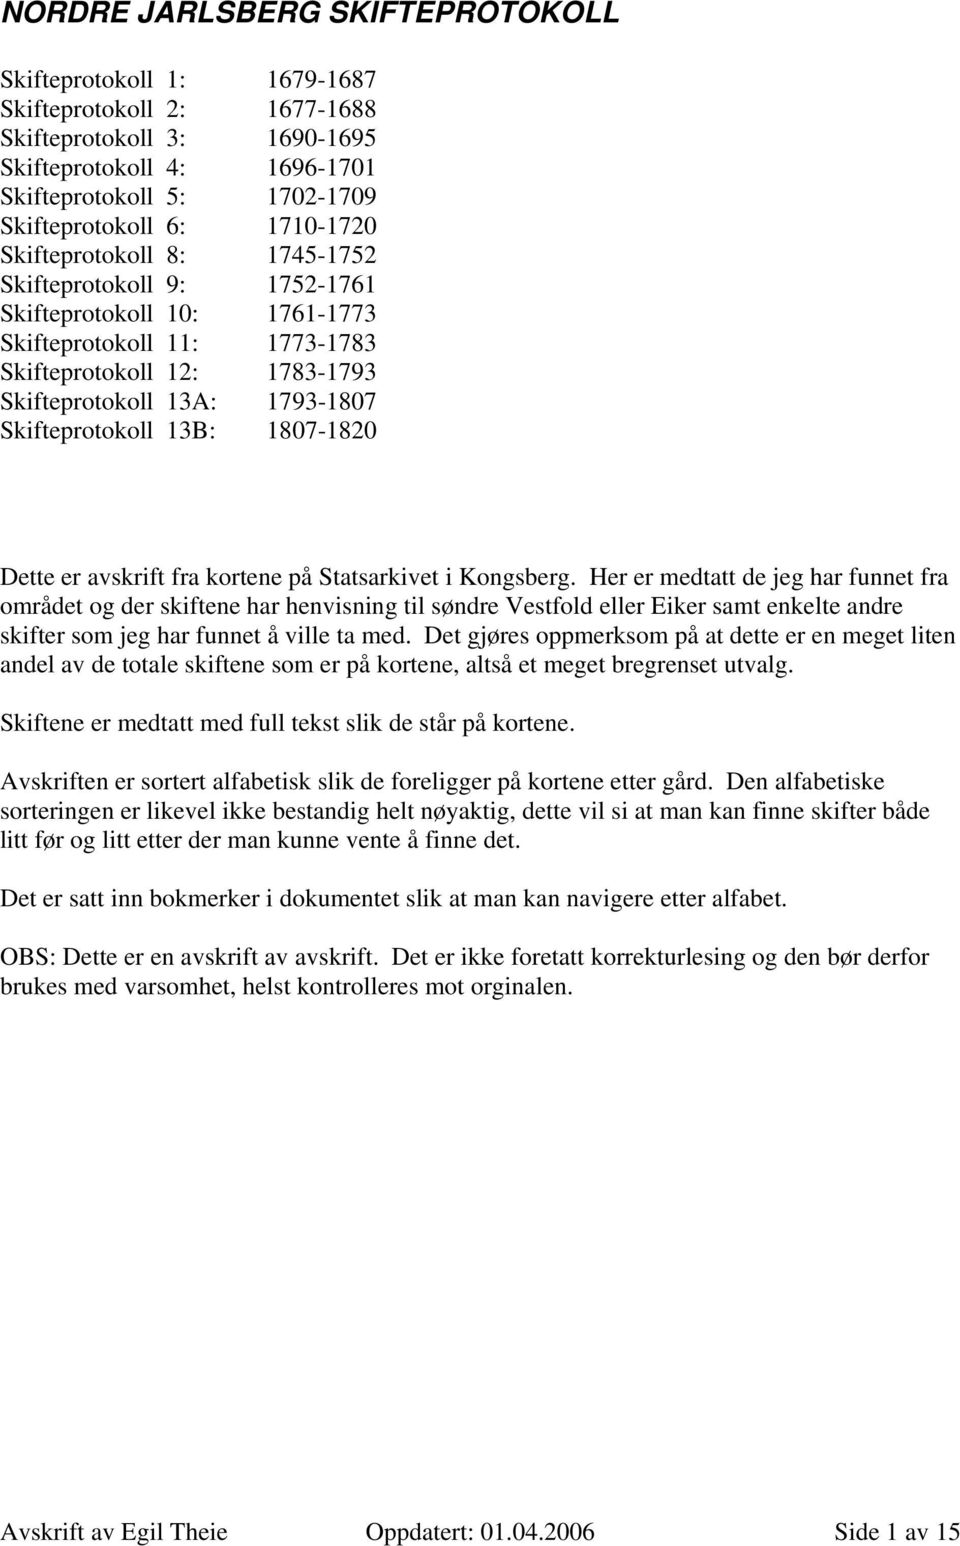 Skifteprotokoll 13B: 1807-1820 Dette er avskrift fra kortene på Statsarkivet i Kongsberg.